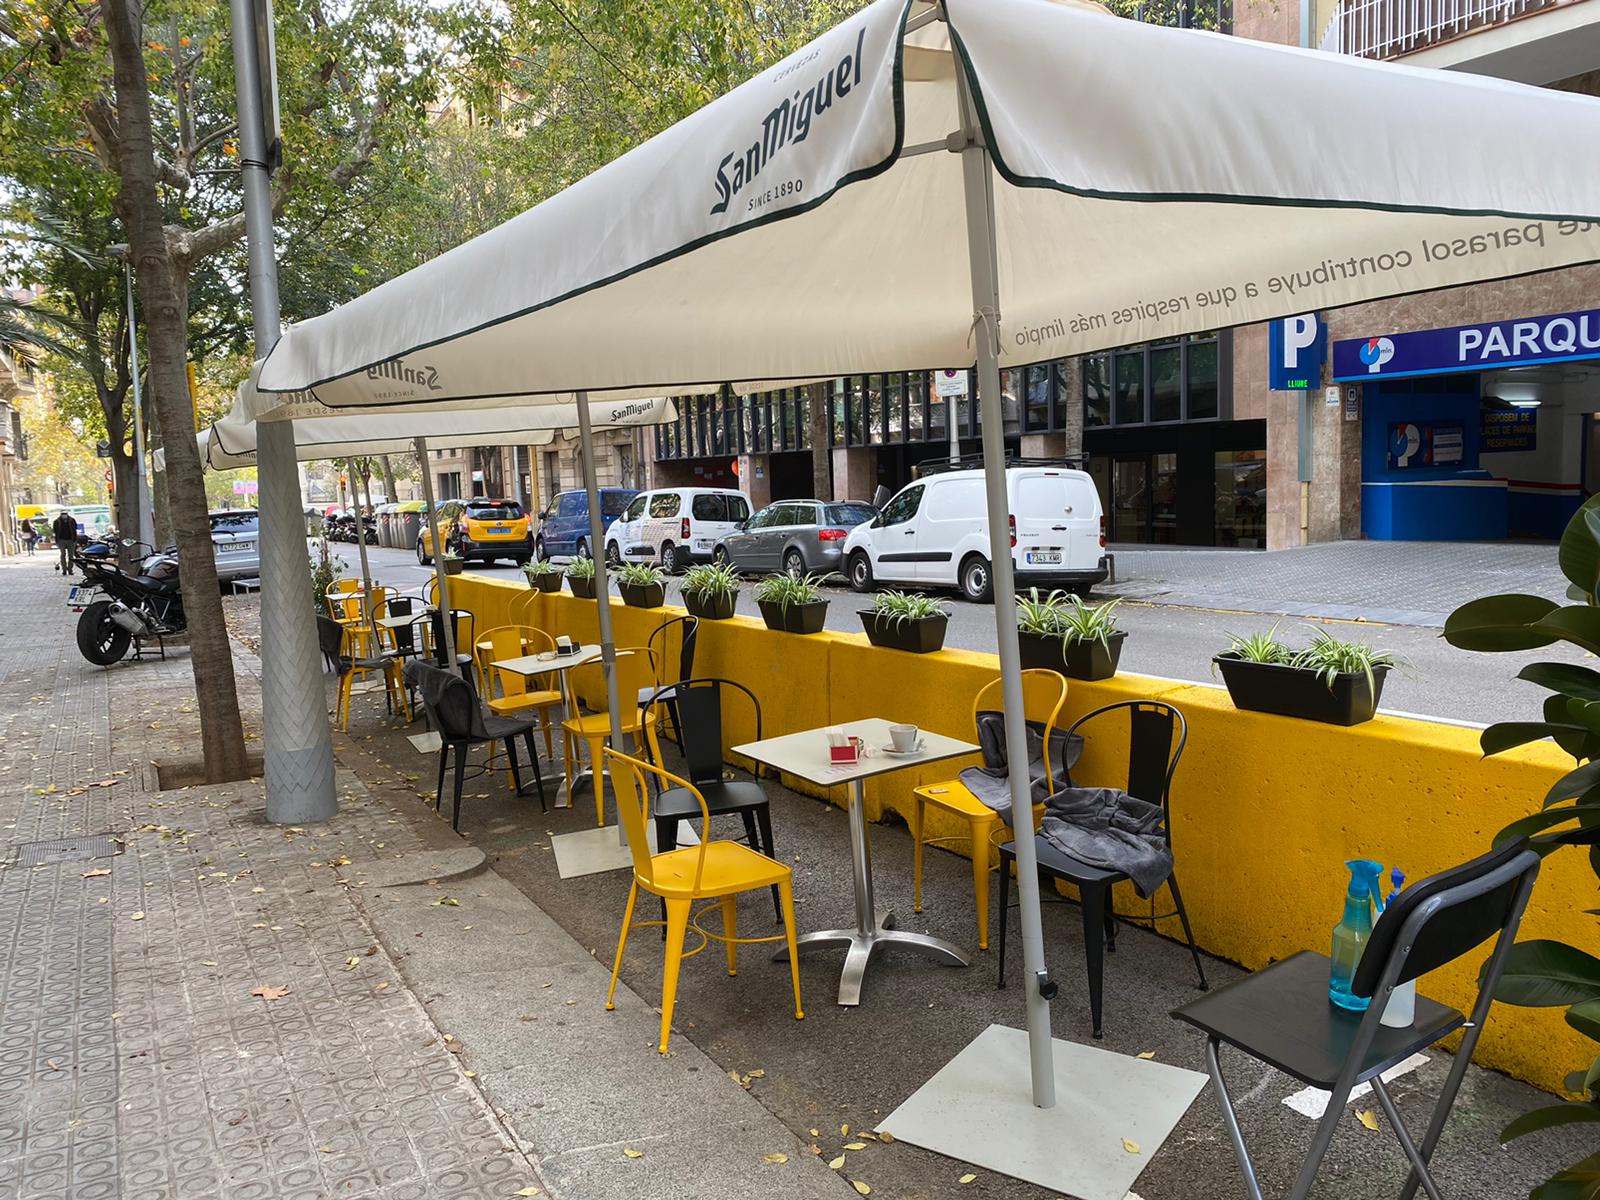 Adeu als blocs de formigó: Barcelona regularitza les terrasses a la calçada